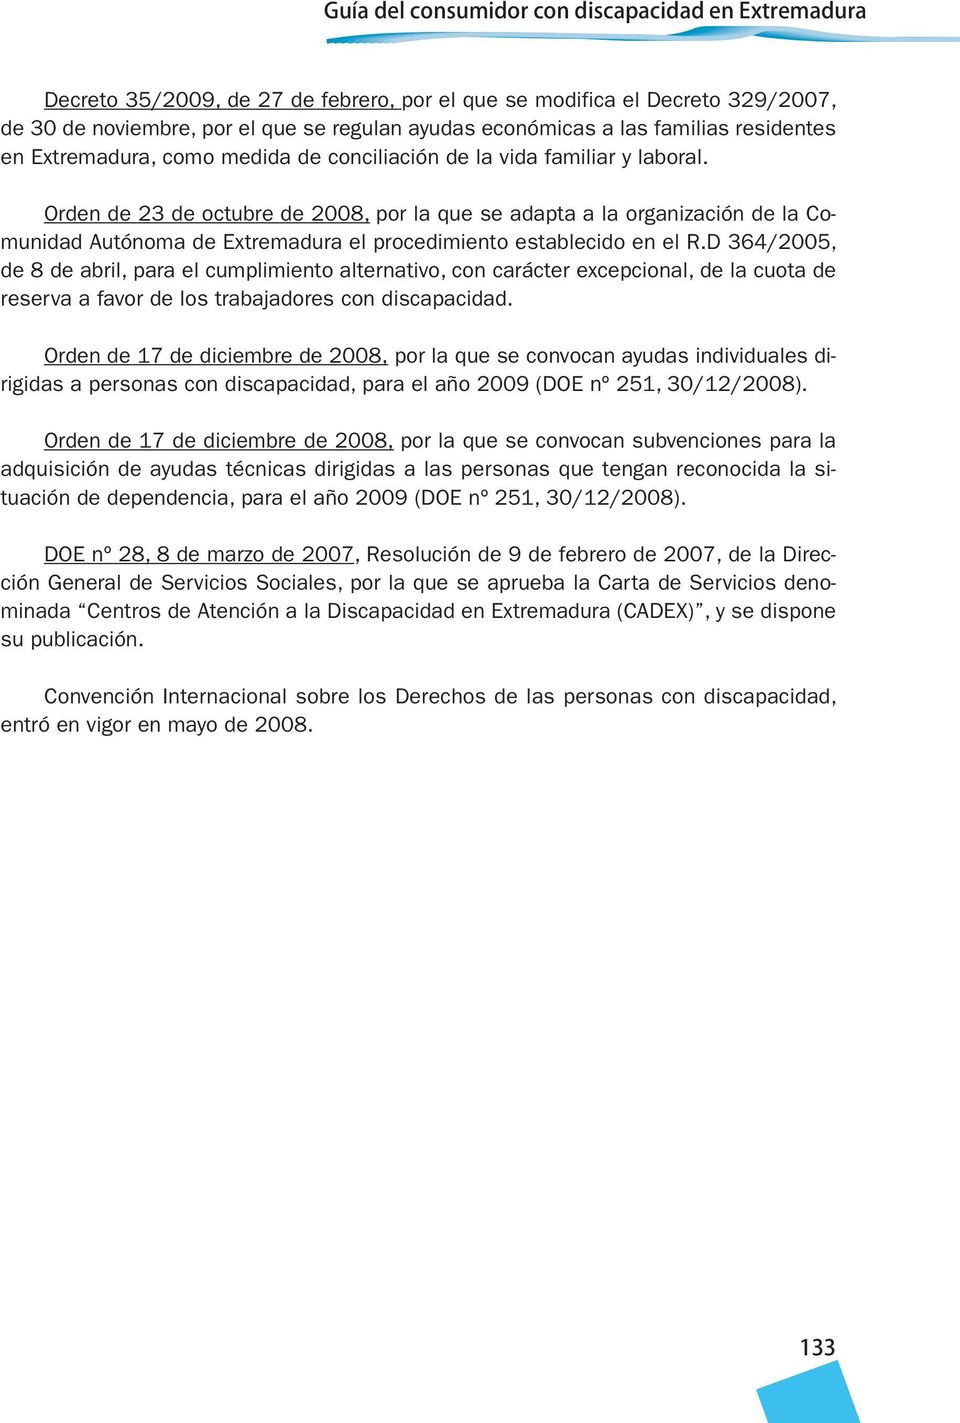 Orden de 23 de octubre de 2008, por la que se adapta a la organización de la Comunidad Autónoma de Extremadura el procedimiento establecido en el R.